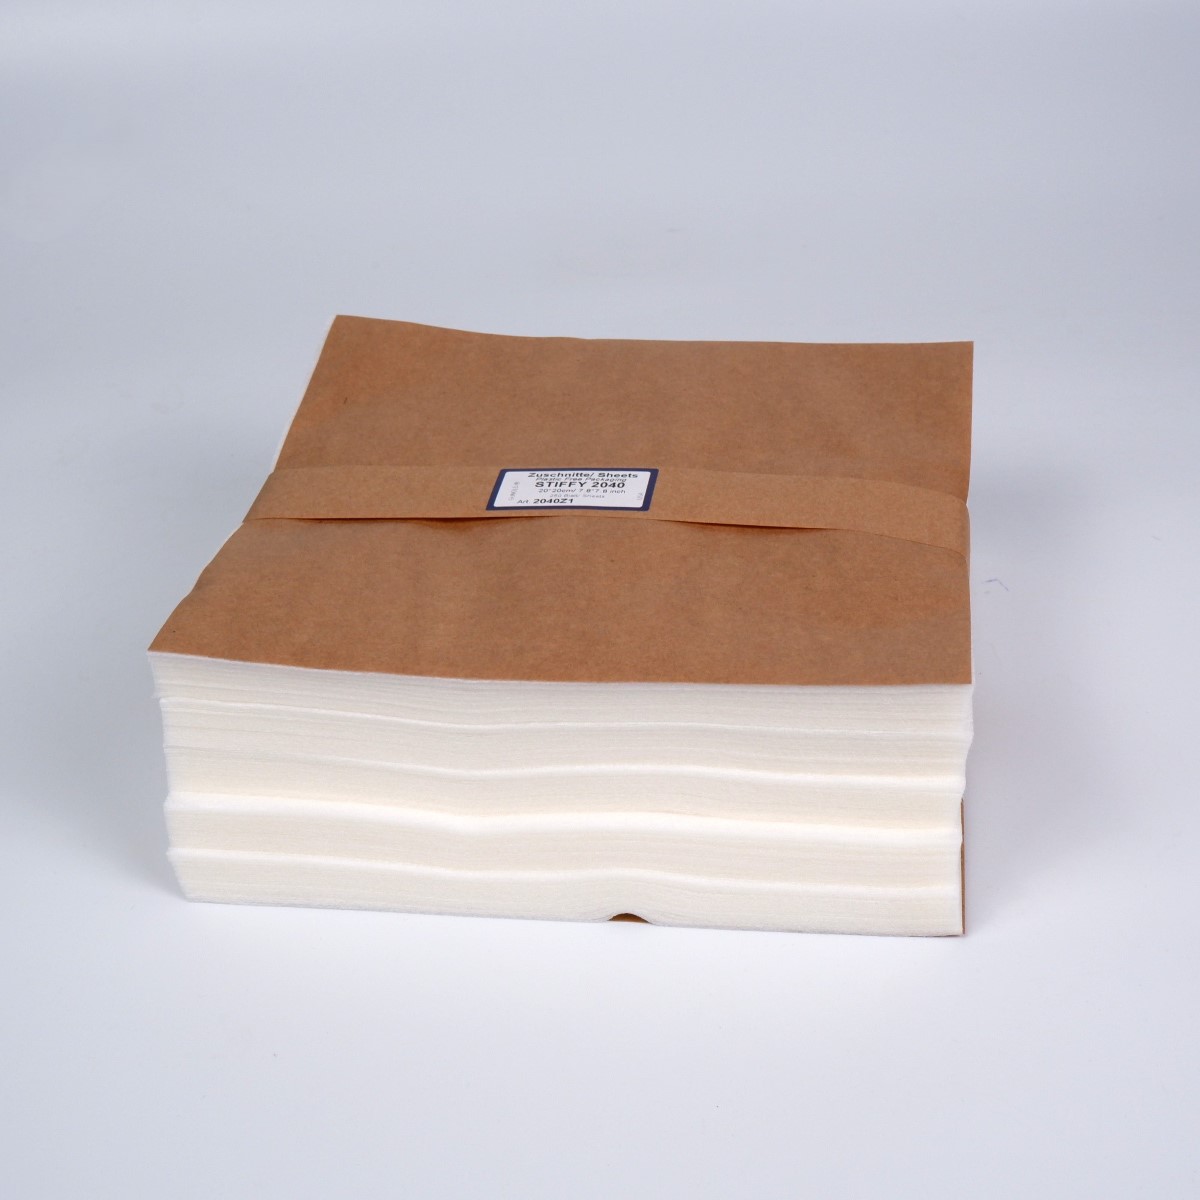 Pre-cuts - STIFFY 2040 white, 20x20cm (+/- 2%
), 250 sheets